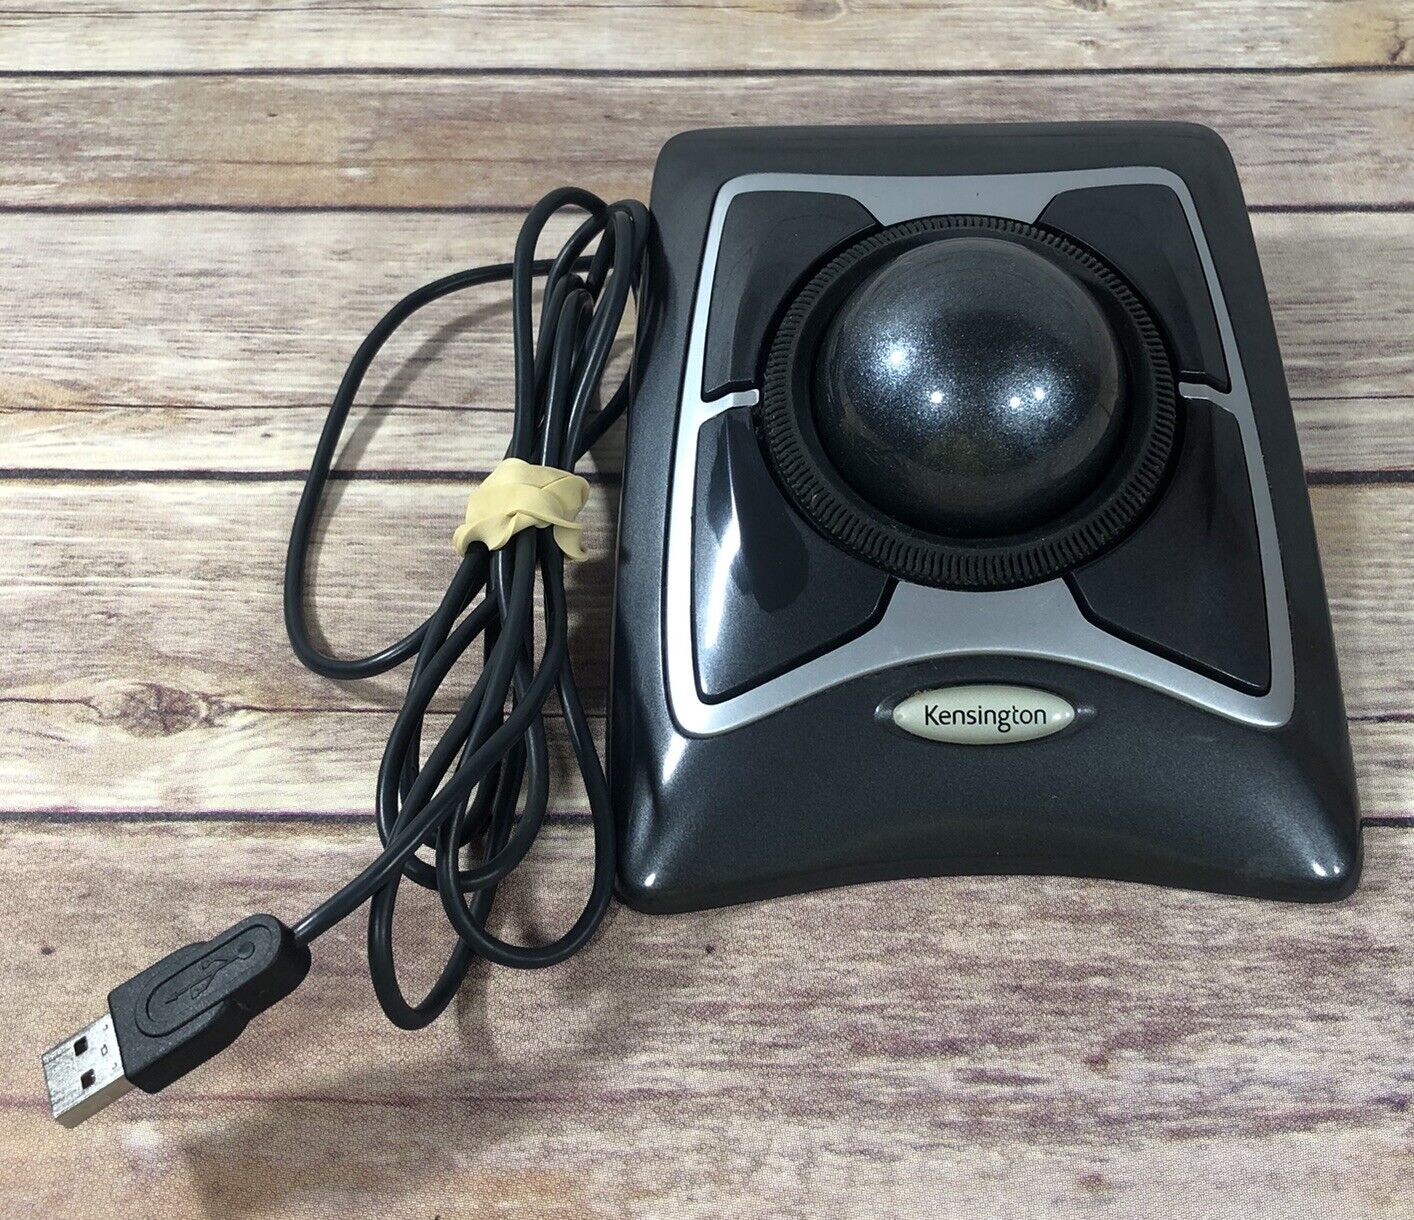 Kensington Expert Mouse Trackball Model #K64325 Wired USB Black Silver TESTED